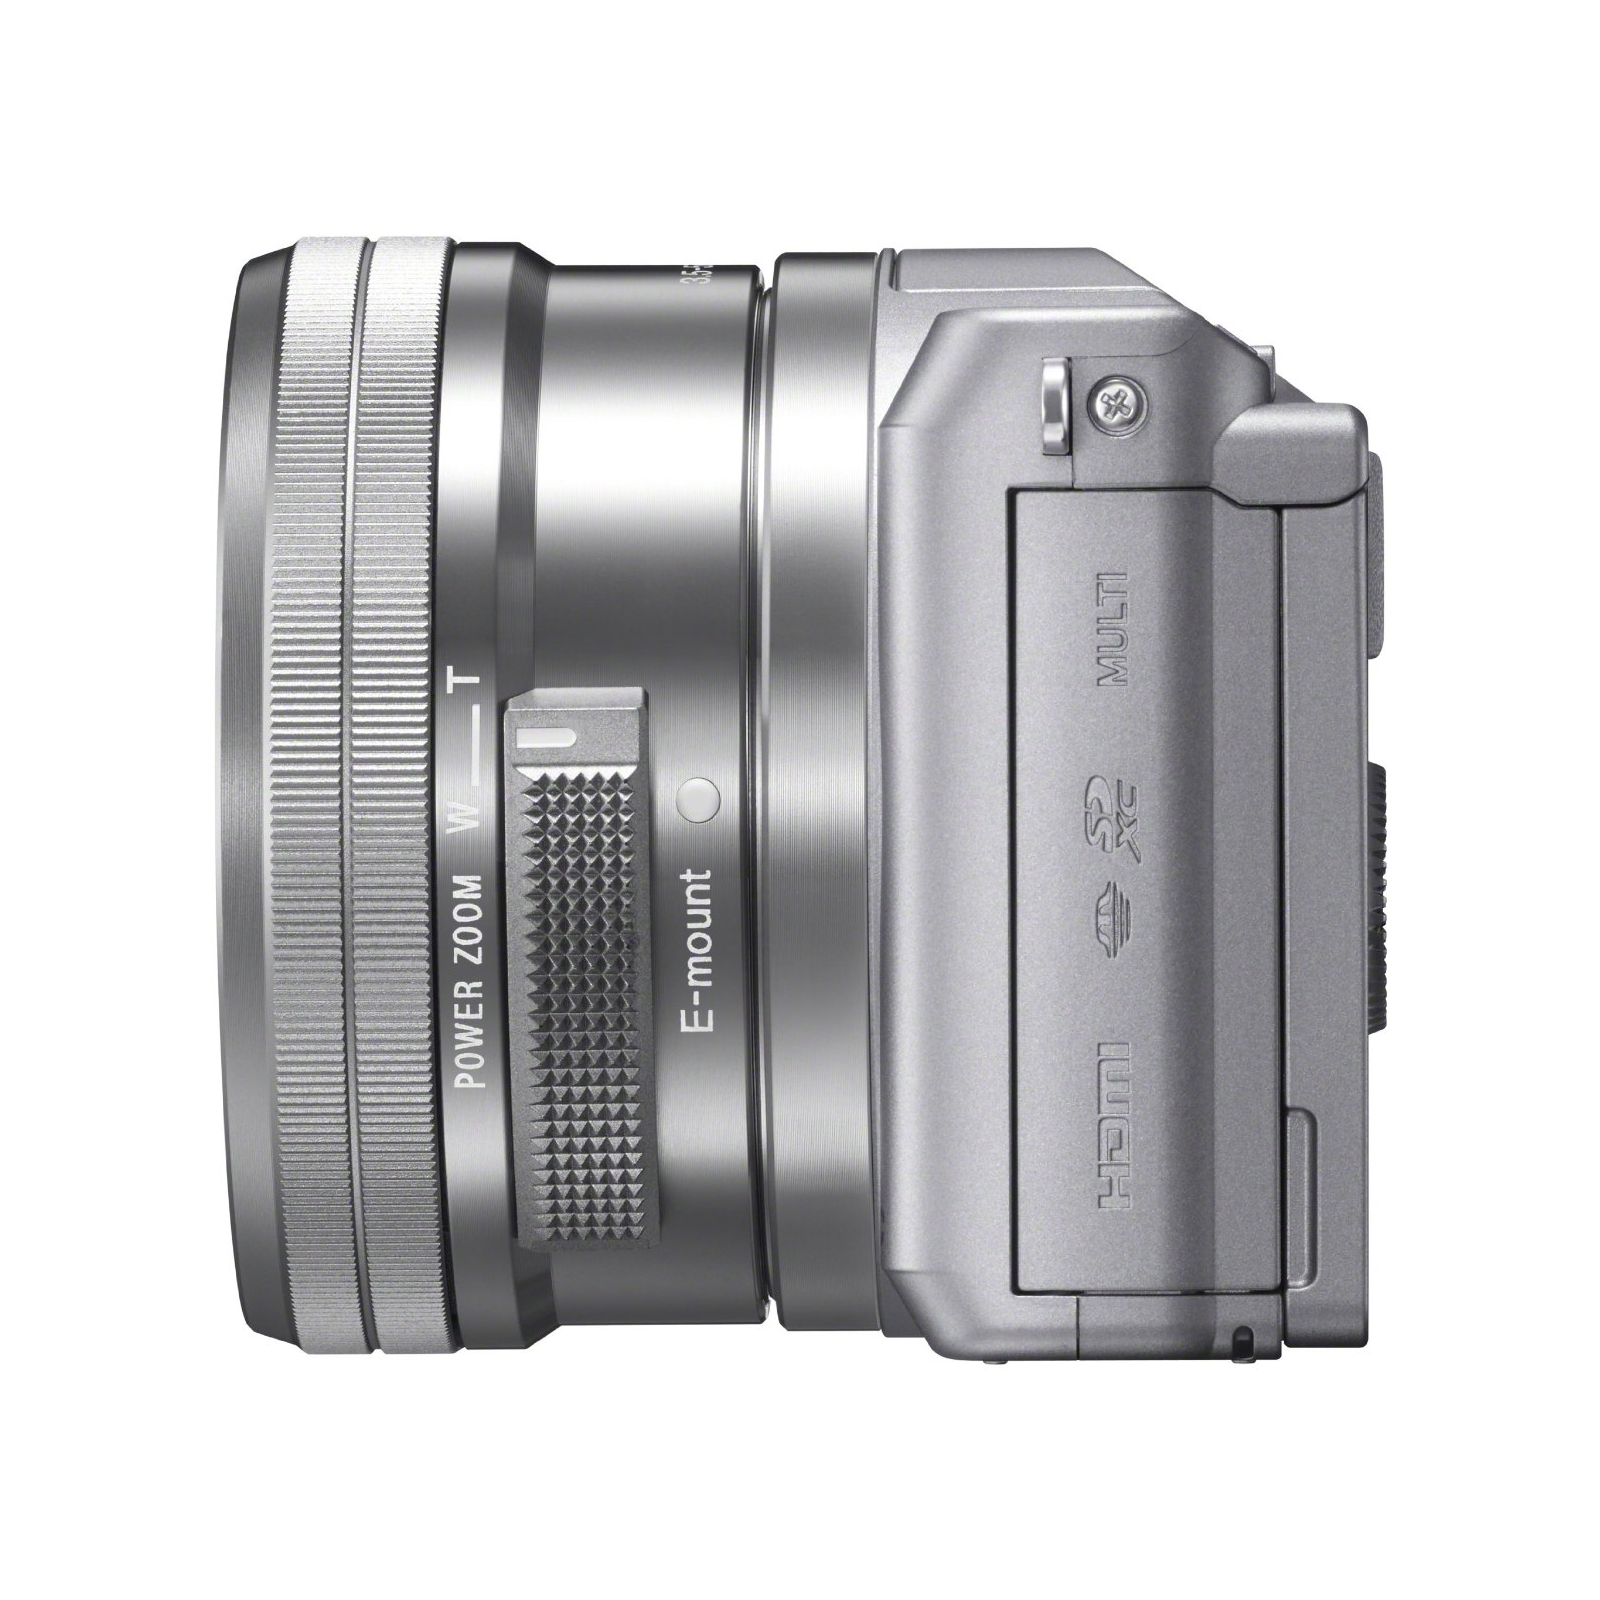 Цифровой фотоаппарат Sony Alpha 5000 kit 16-50 Pink (ILCE5000LP.CEC) изображение 4